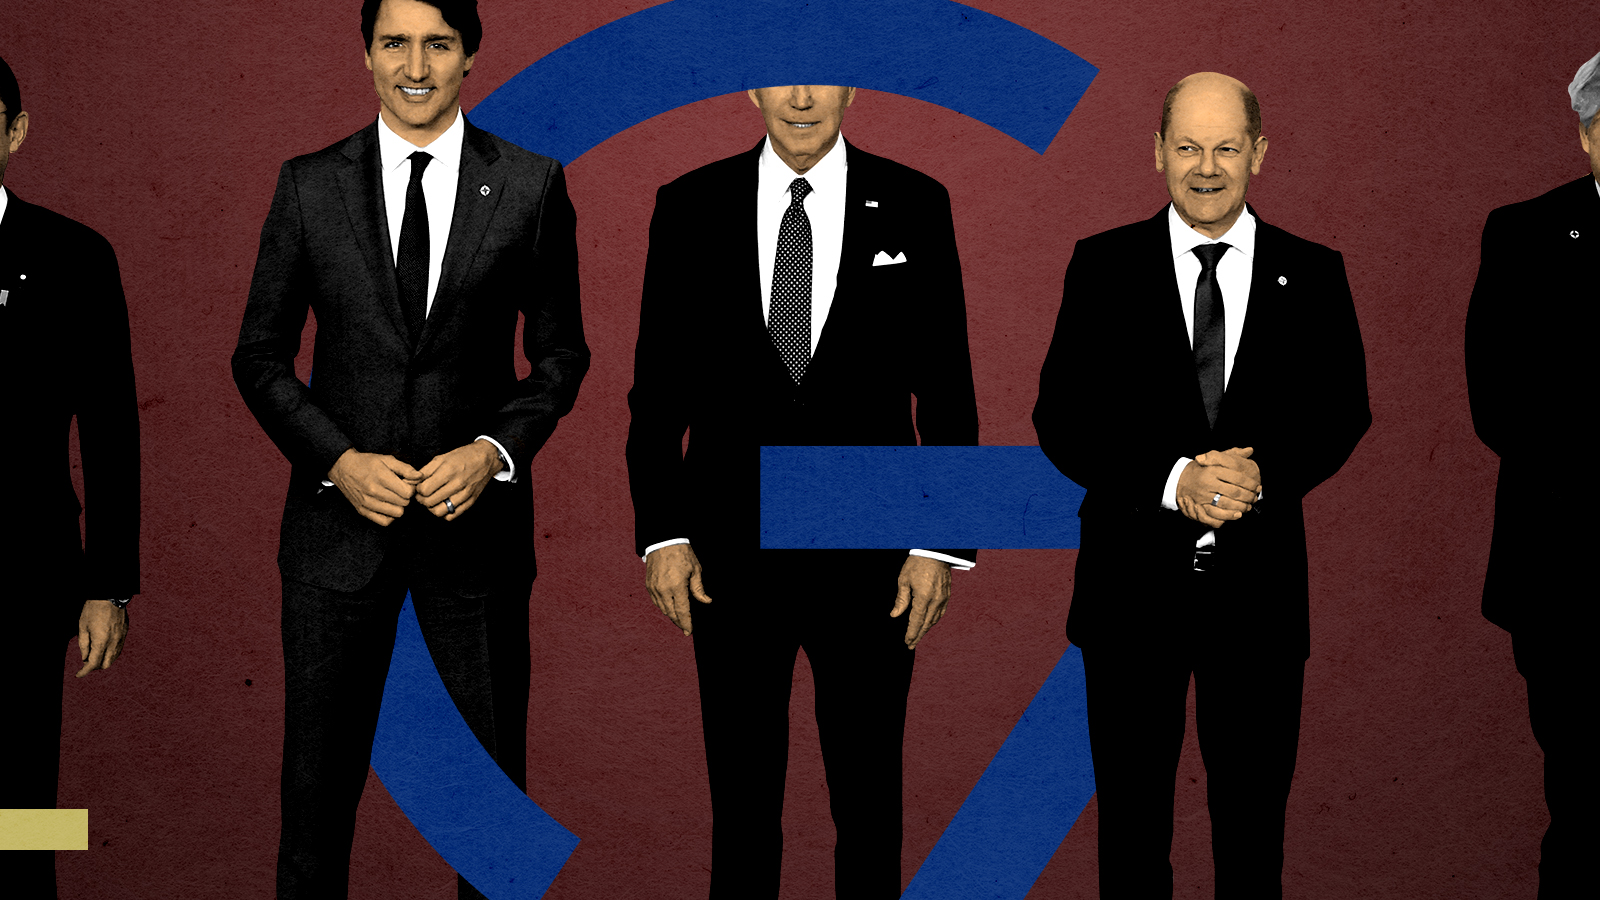 G7 leaders.